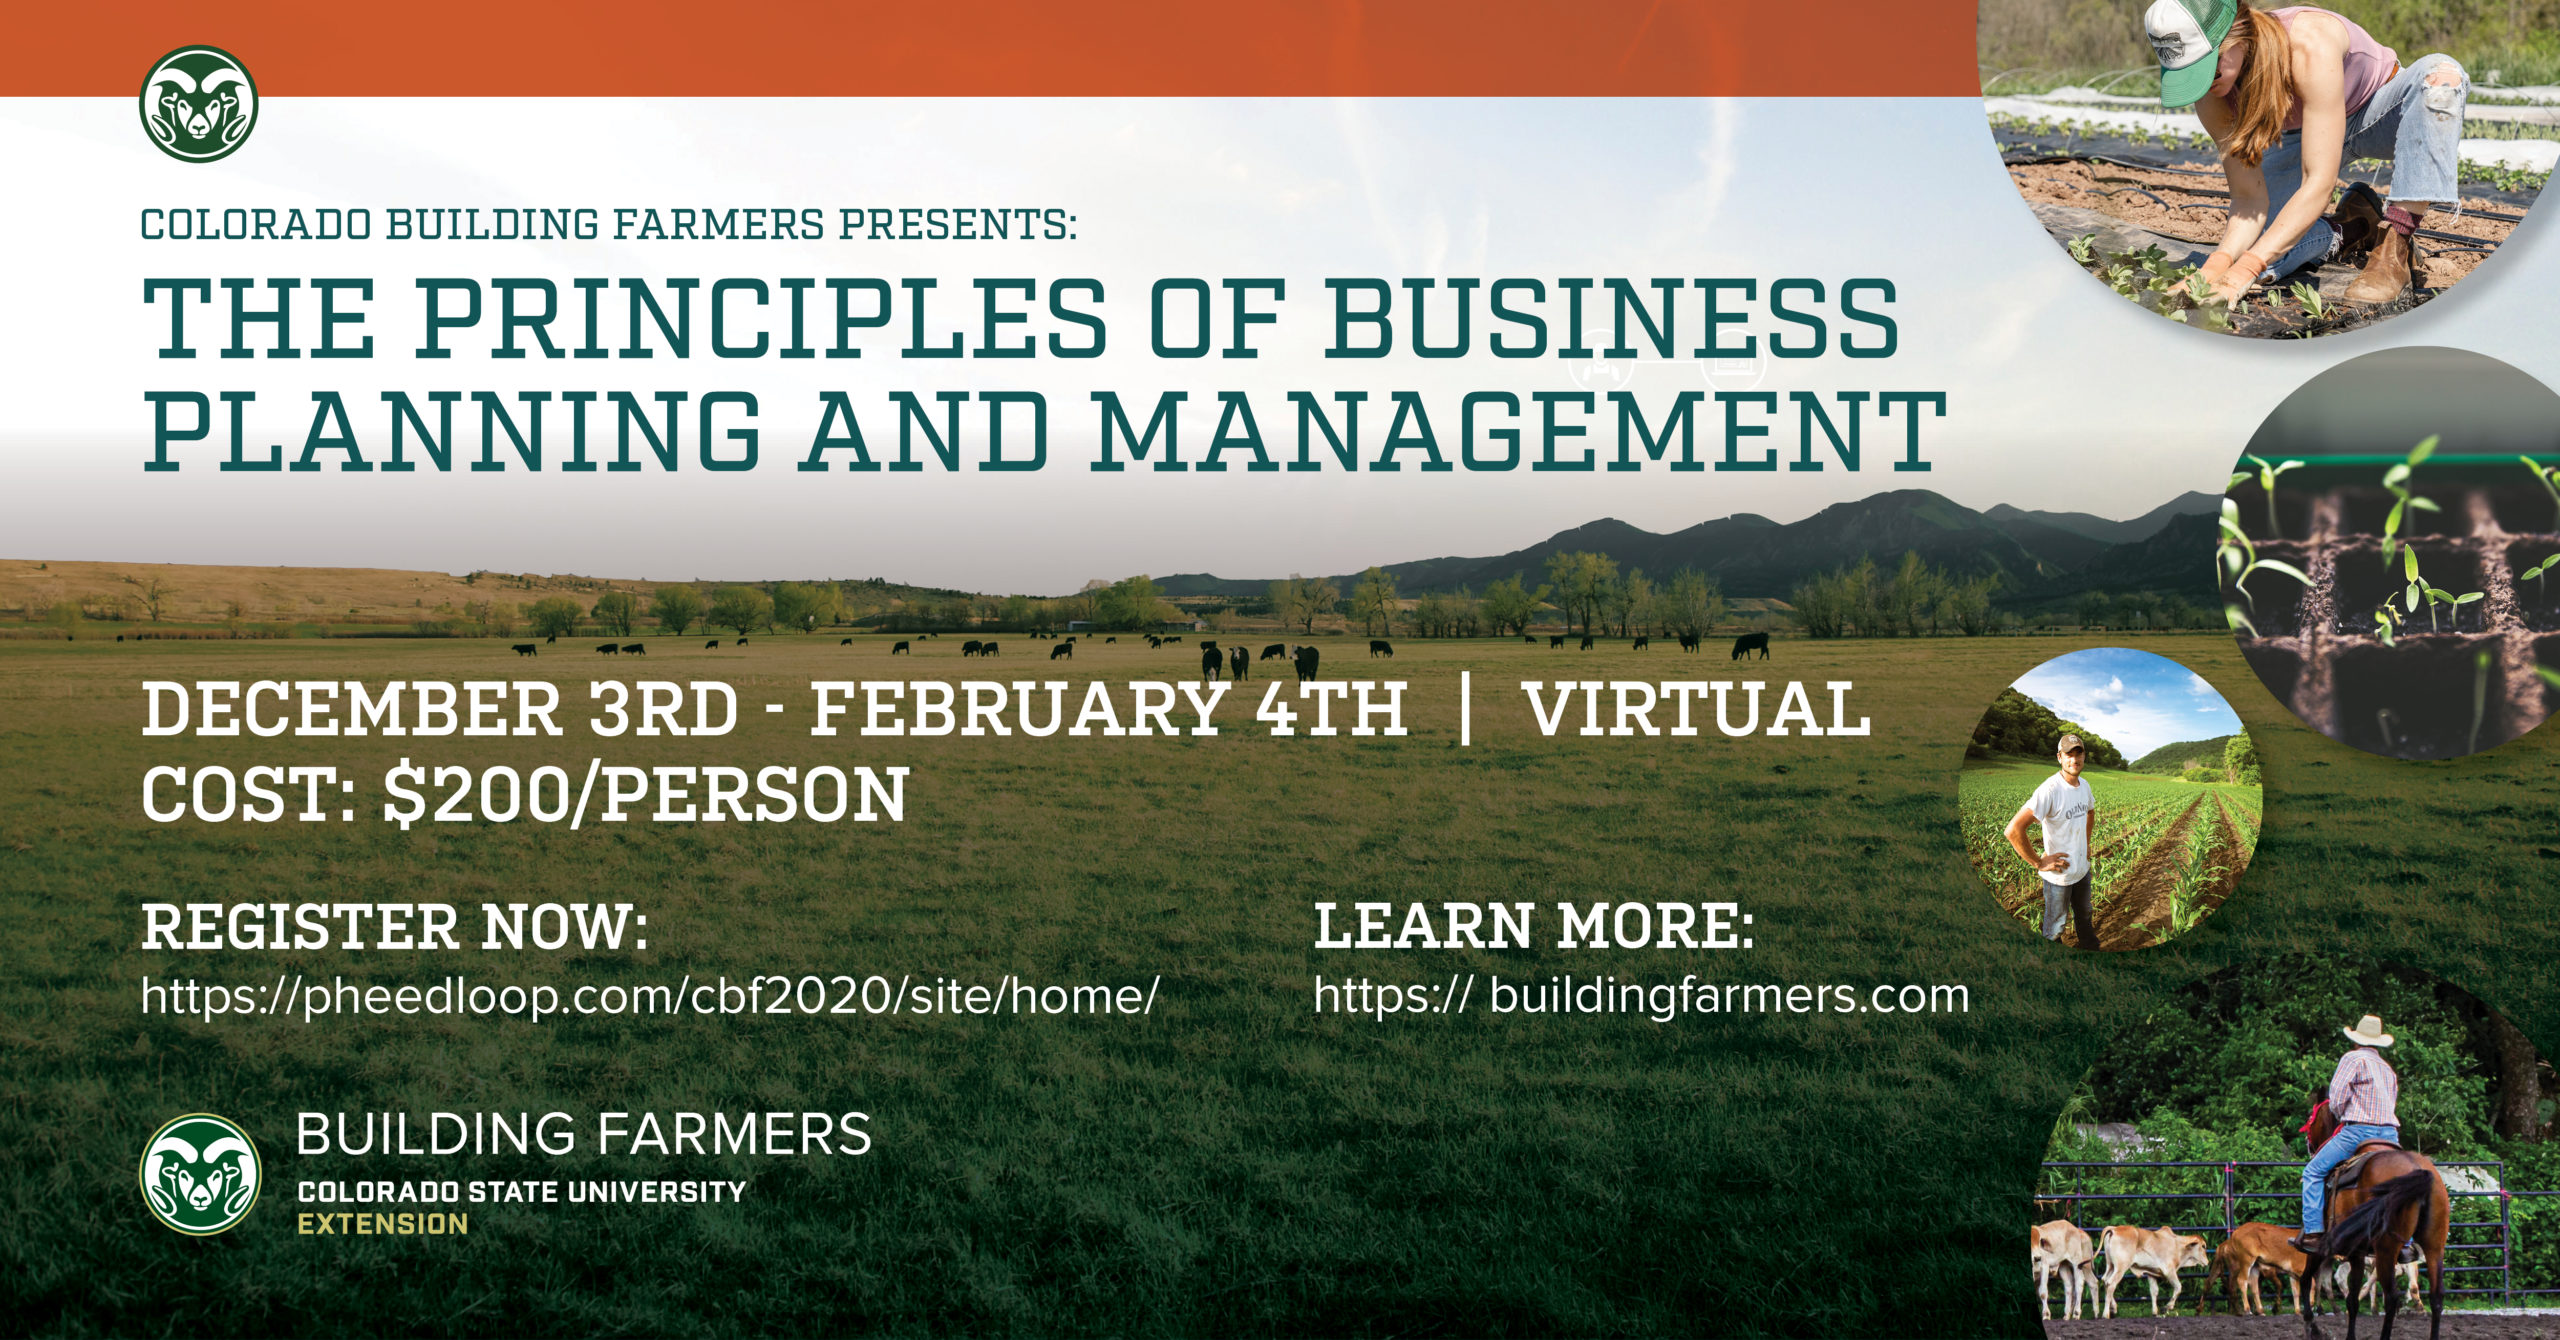 Colorado Building Farmers Program Presents Virtual Principles of ...